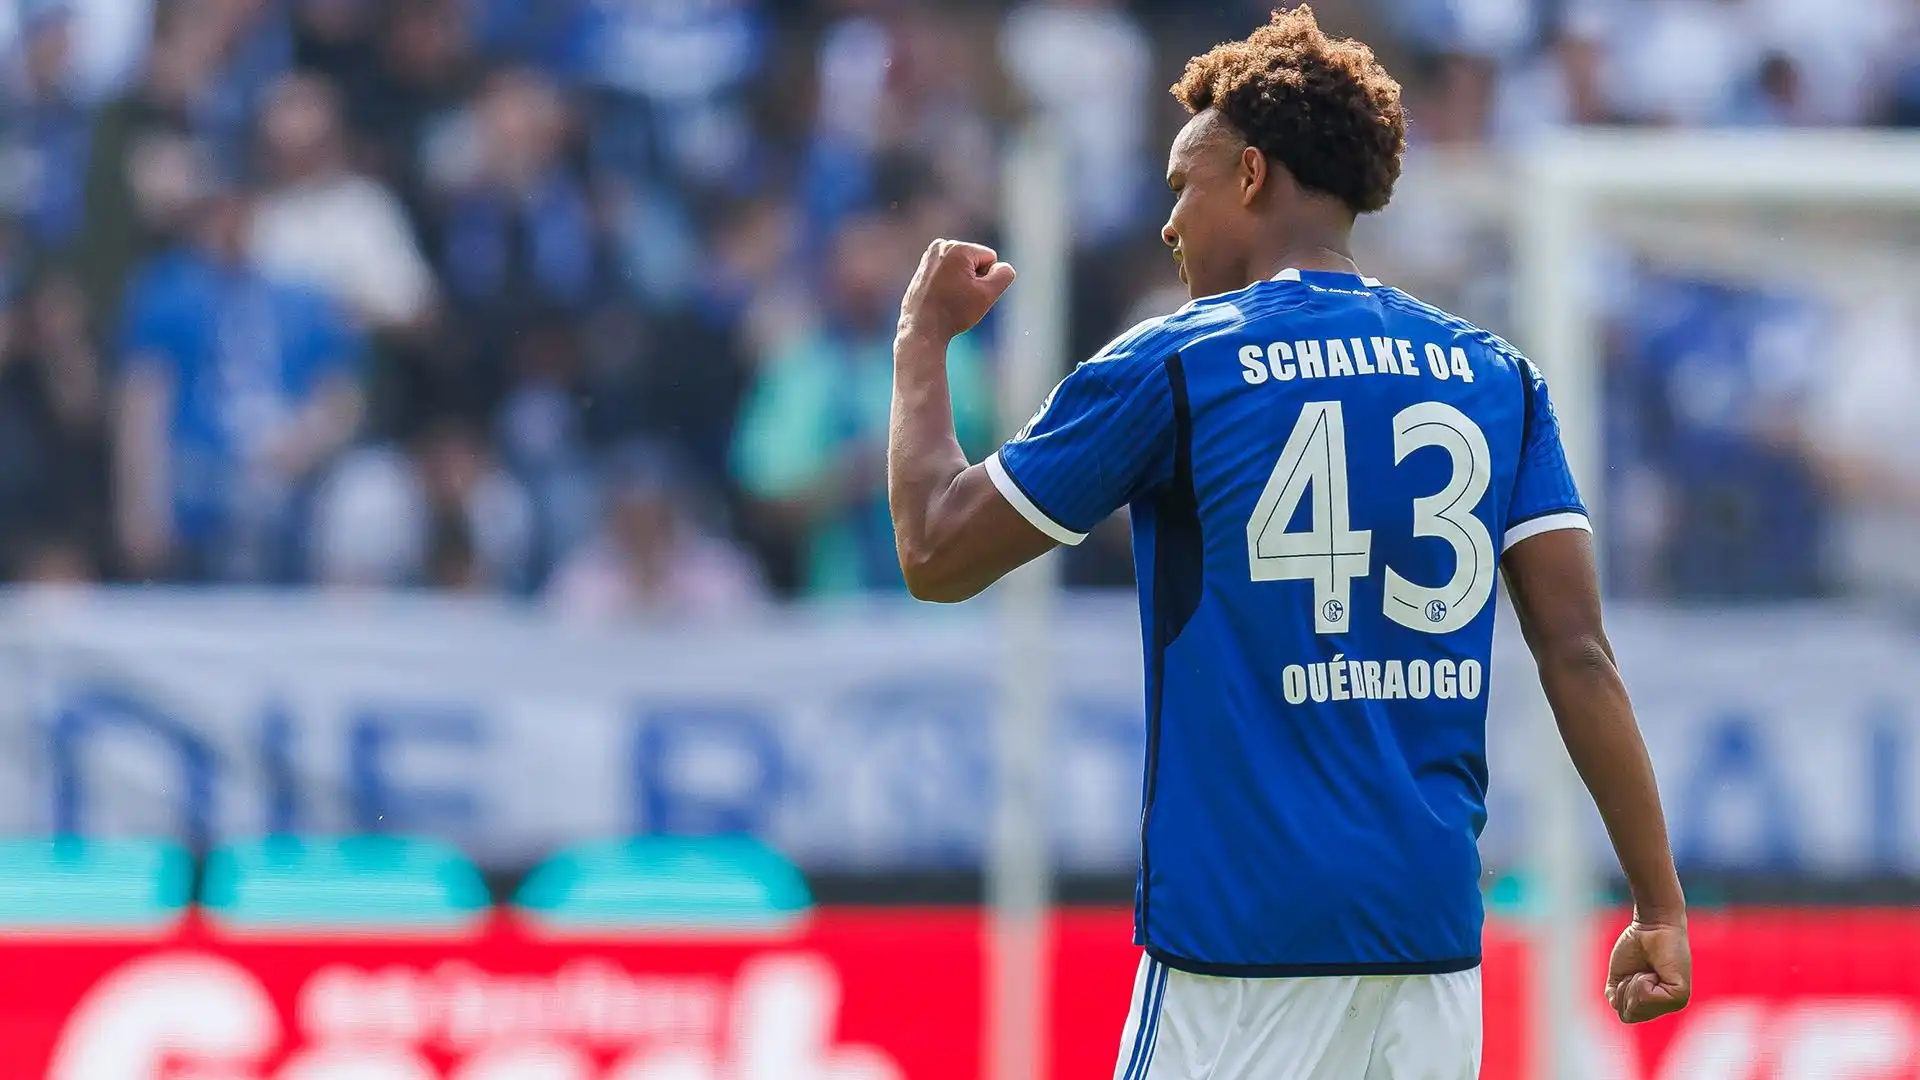 Talento dal futuro assicurato, Assan Ouédraogo in Germania è conteso dal Lipsia e dal Bayern Monaco, che negli ultimi giorni ha intensificato i contatti con gli agenti e lo Schalke